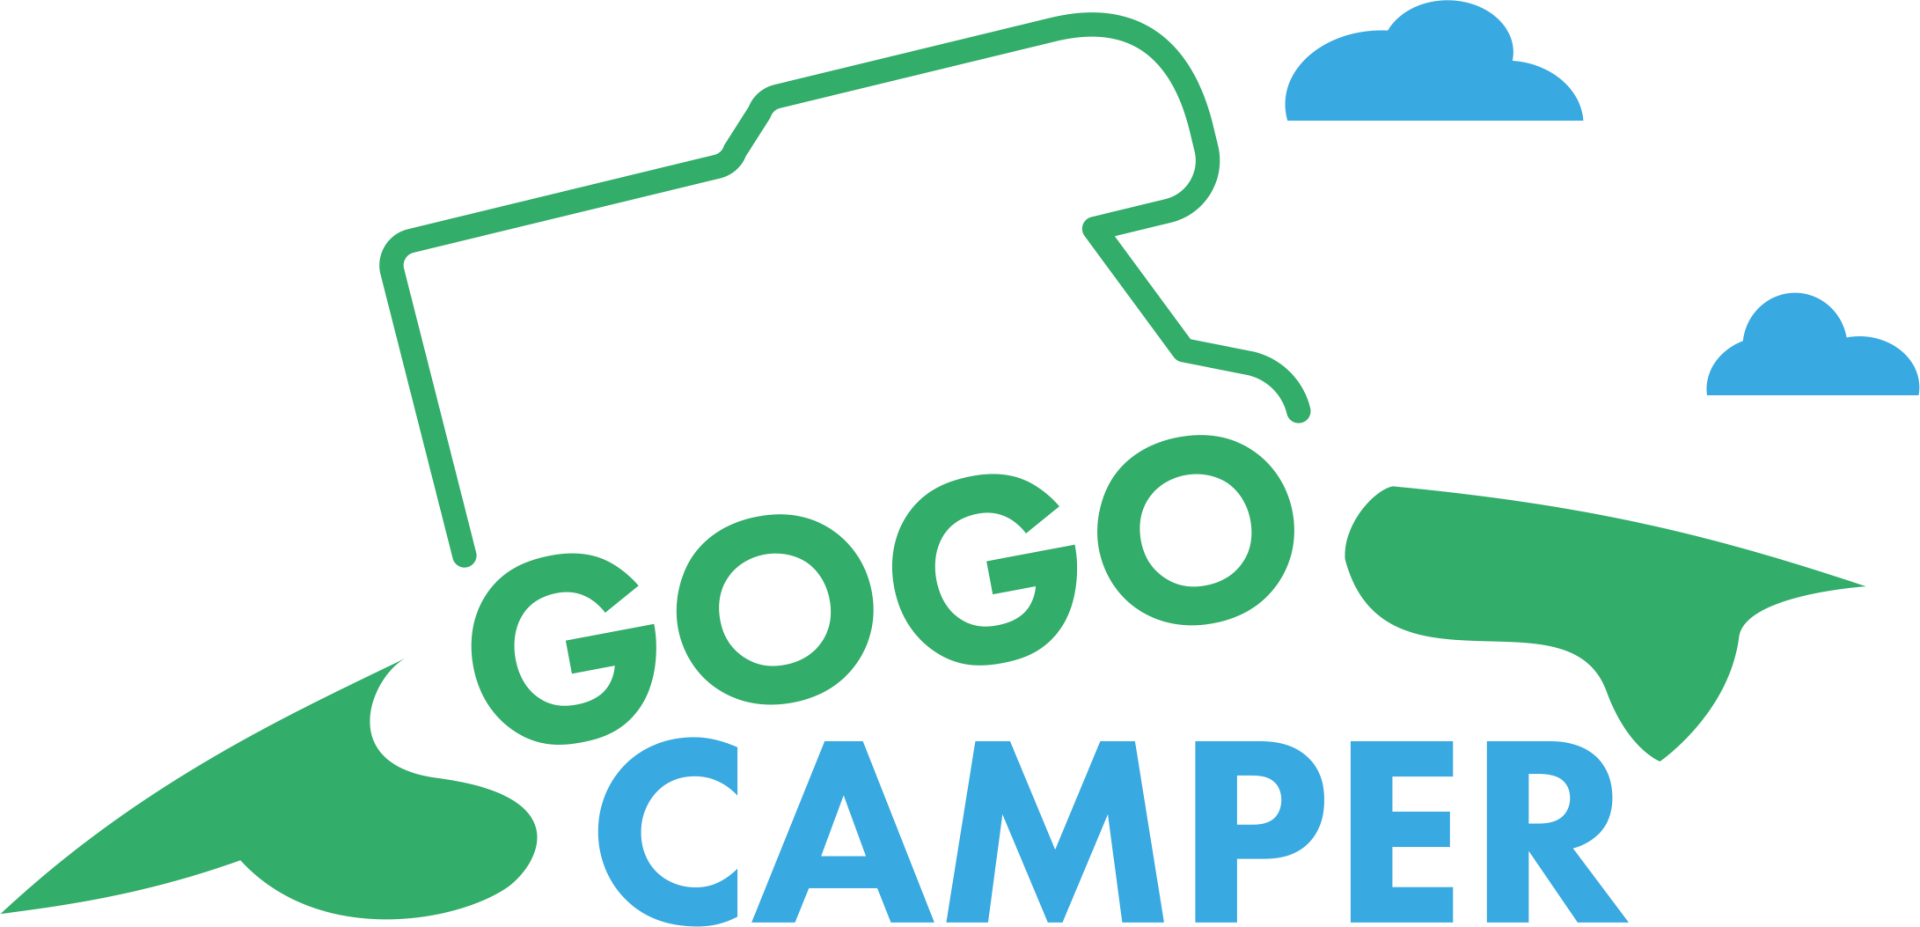 GOGOcamper.be - Reizen met een camper, mobilhome of motorhome betekent vrijheid, onafhankelijkheid, buiten leven, onthaasting, openstaan voor het onverwachte, eenvoud, kort bij de natuur, slow travel, ontdekken, … en toch zorgeloos en met veel comfort. 